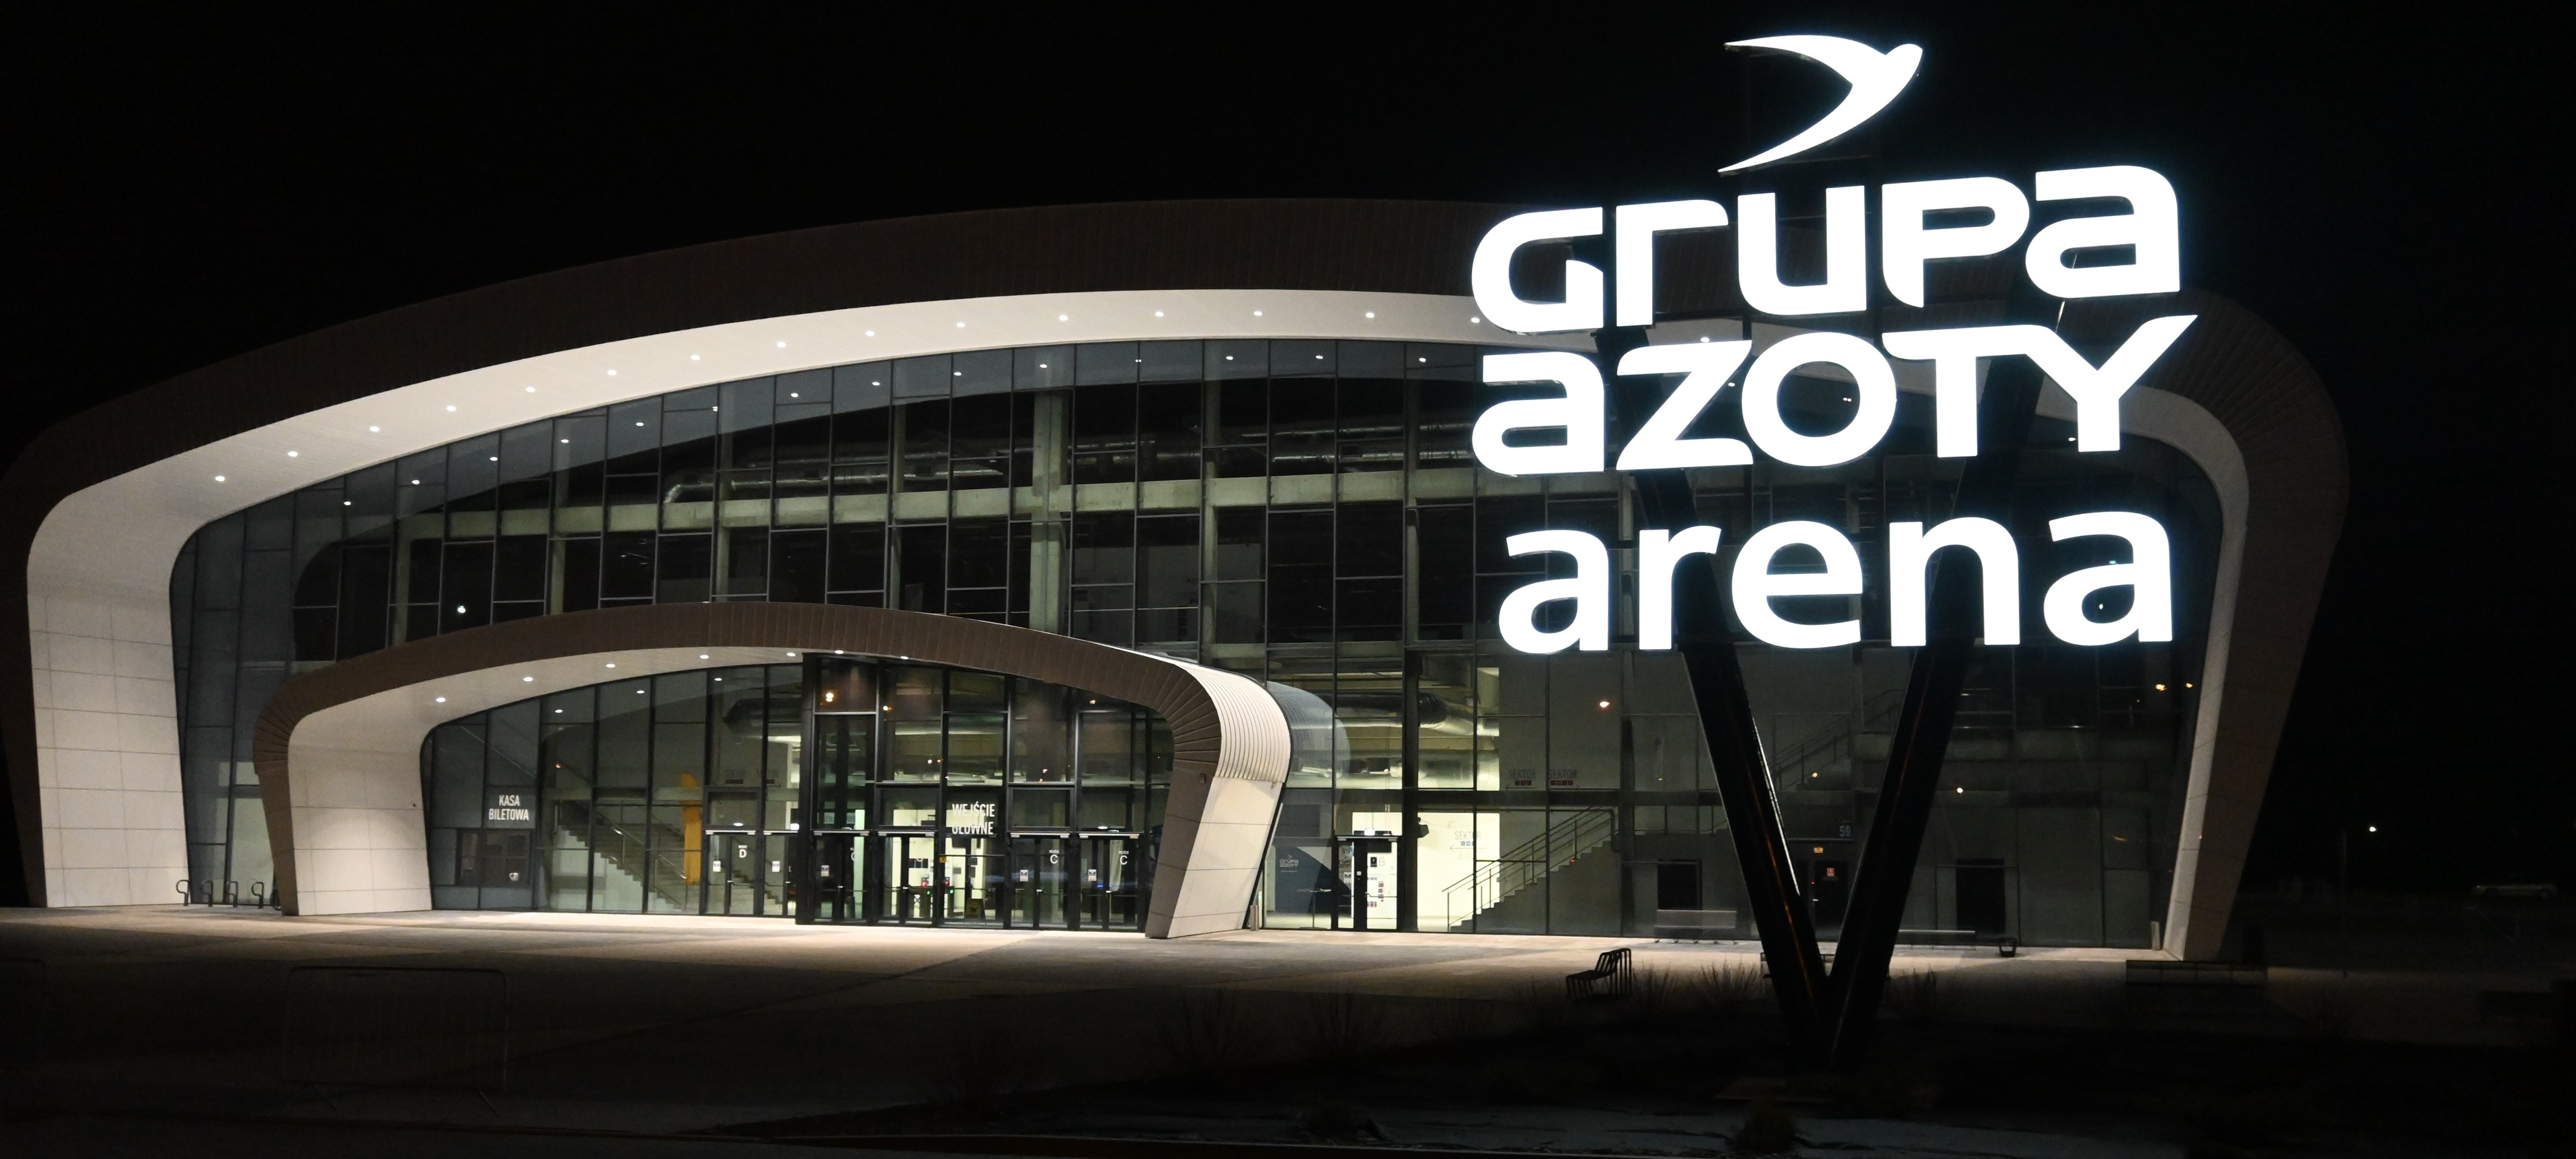 Pylon świetlny z napisem Grupa Azoty Arena. Na drugim planie znajduje się hala sportowa Grupa Azoty Arena.